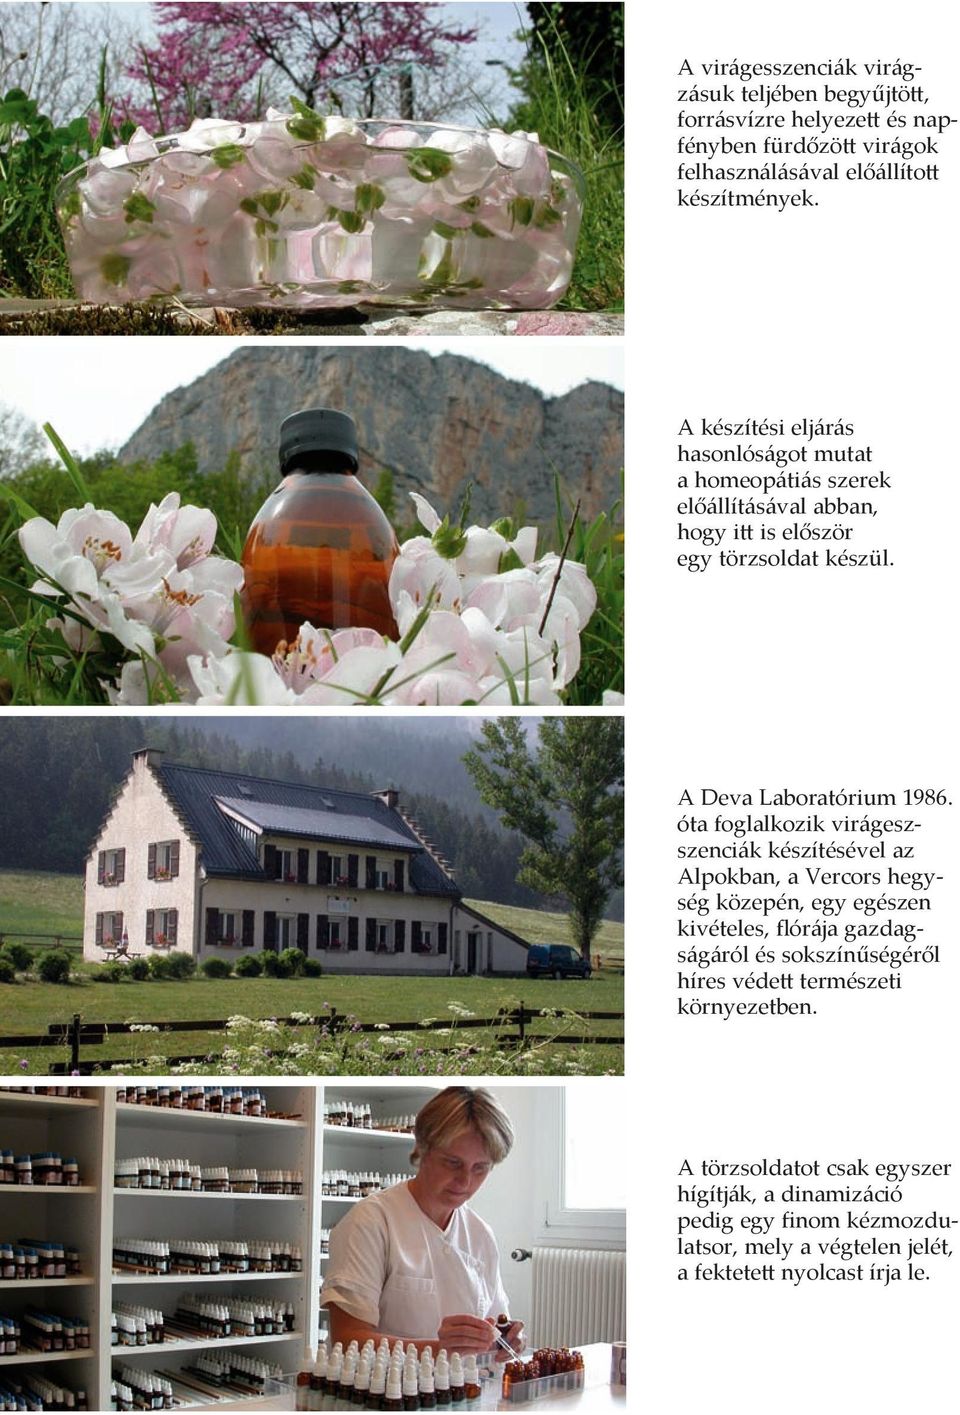 óta foglalkozik virágeszszenciák készítésével az Alpokban, a Vercors hegység közepén, egy egészen kivételes, flórája gazdagságáról és sokszínűségéről híres